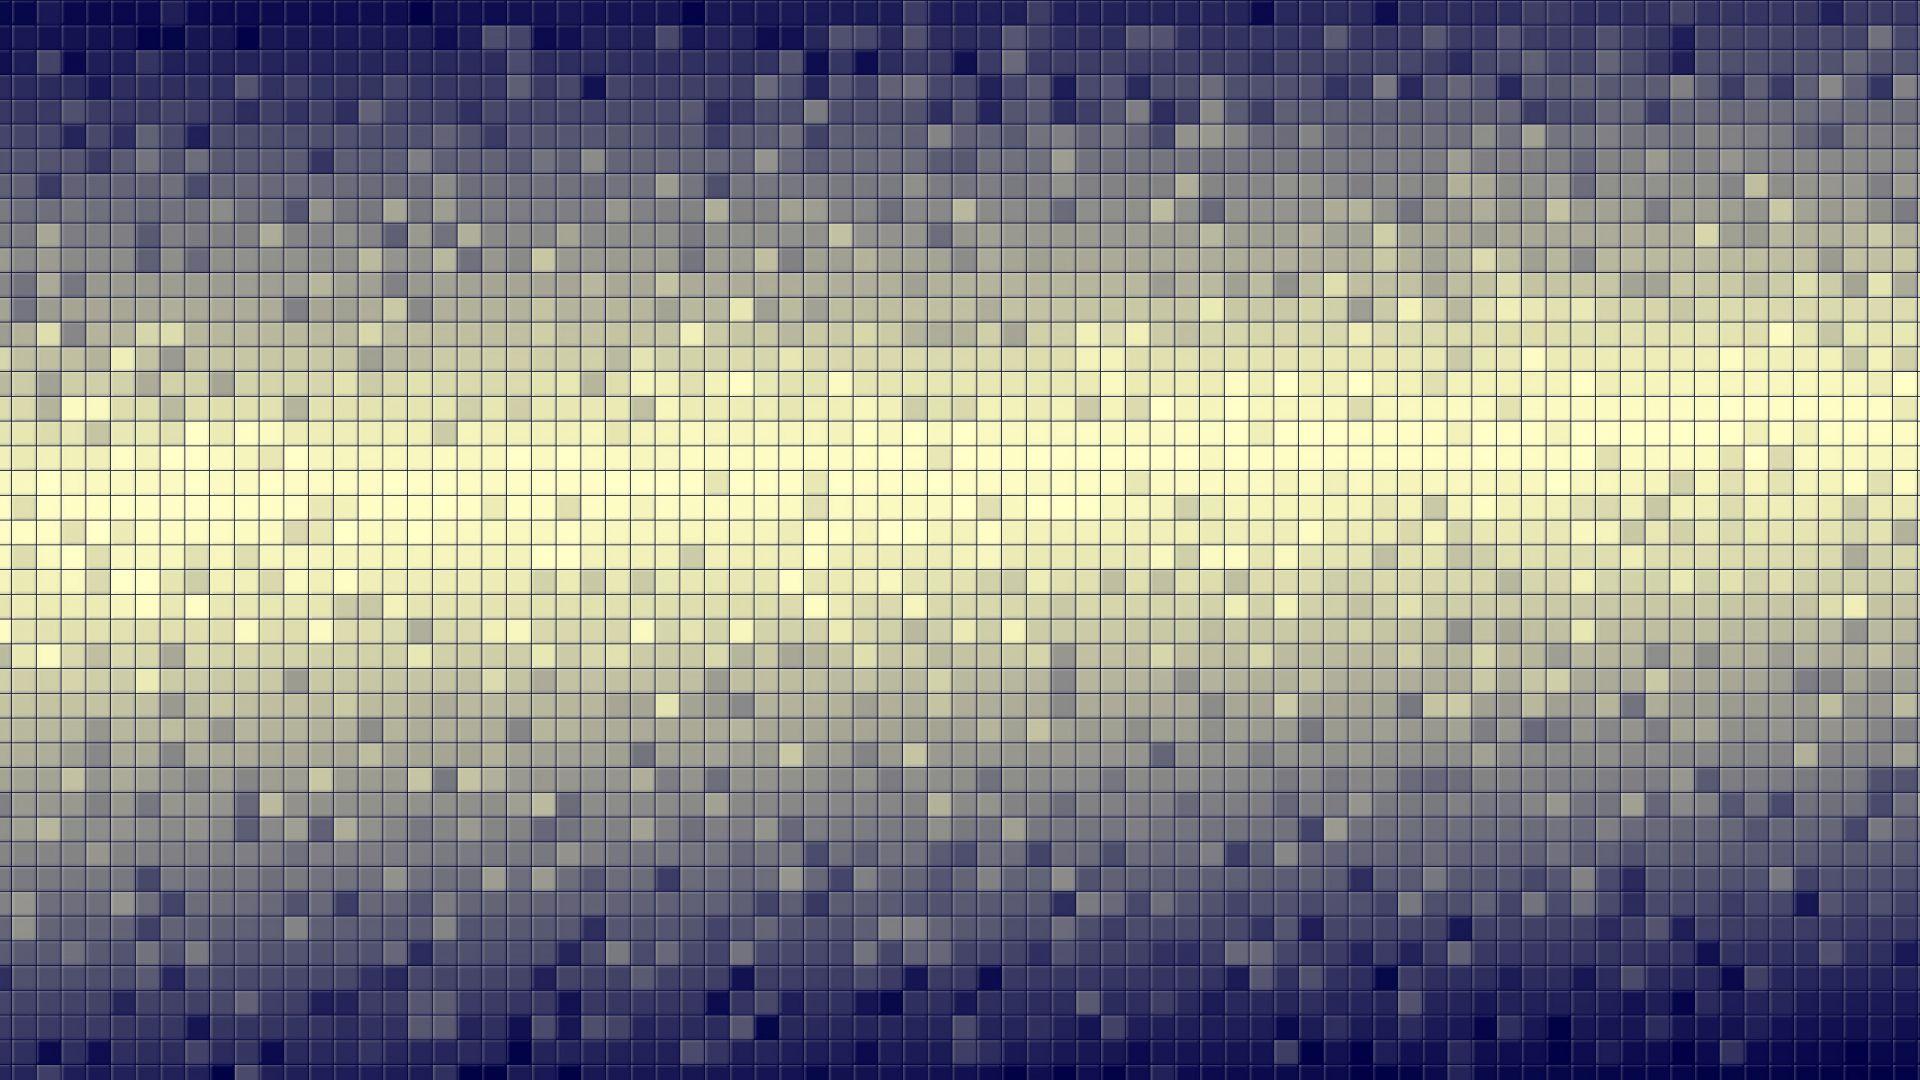 Free Pixel Wallpaper 37730 1920x1080 px